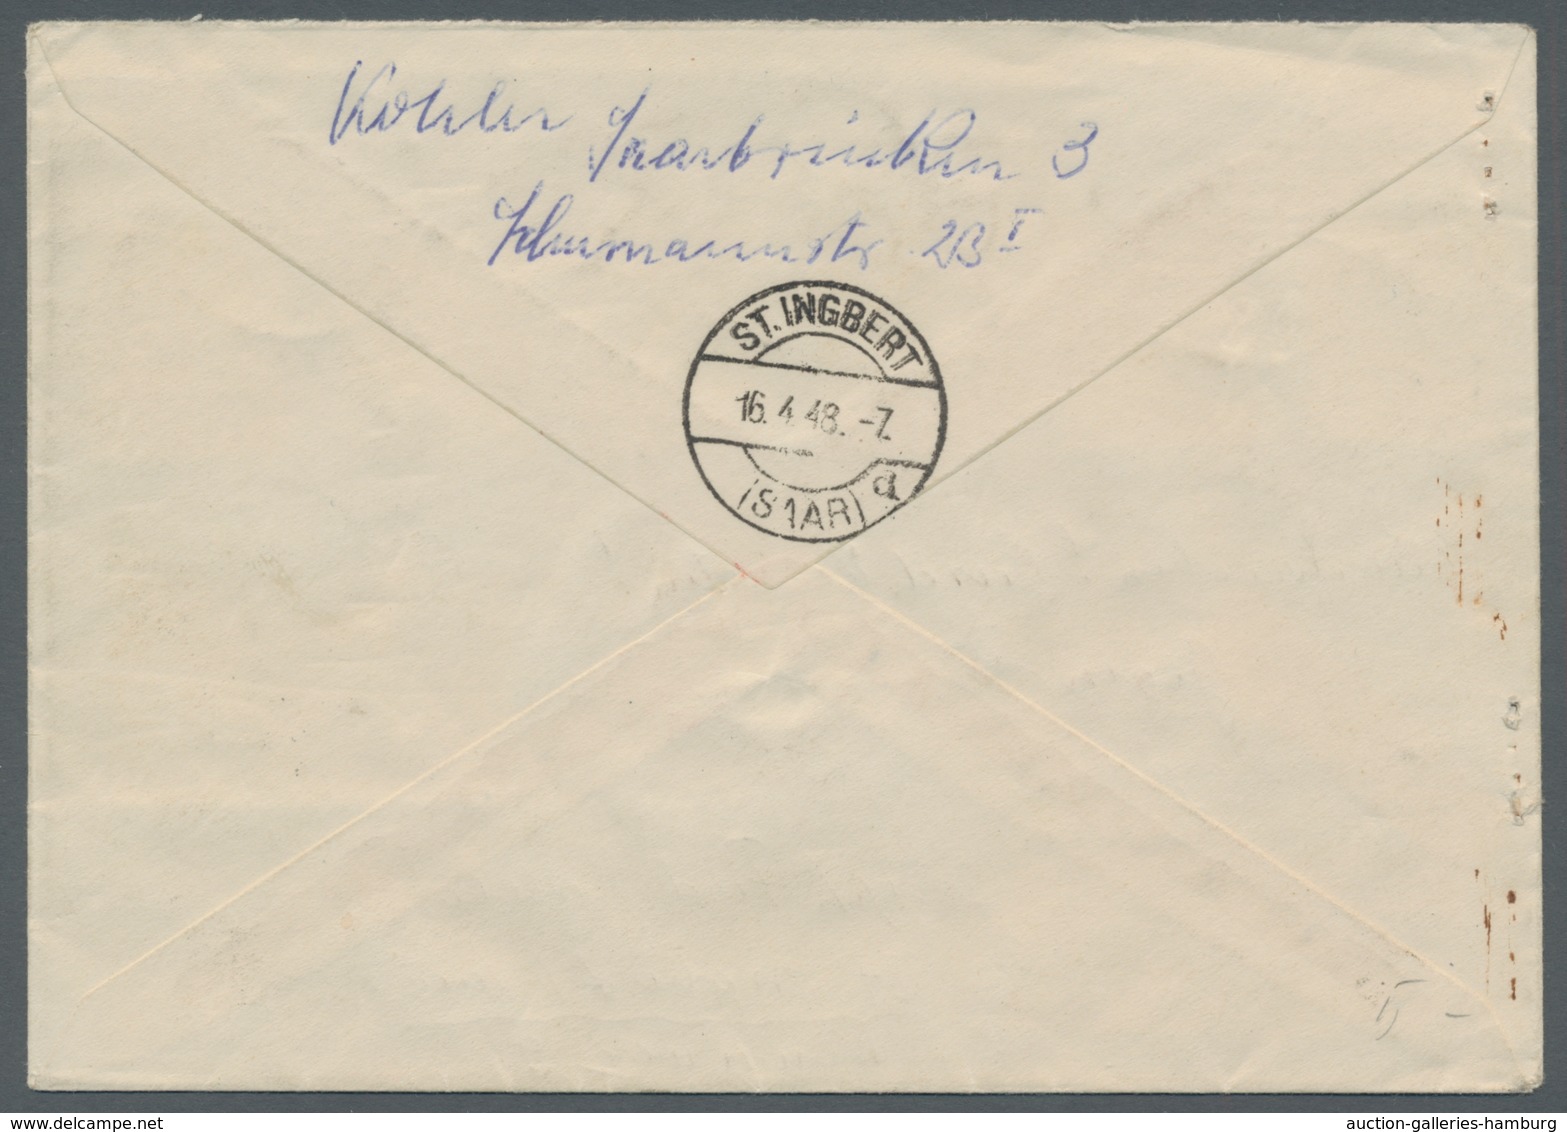 Saarland (1947/56): 1947, "Urdruck" Komplett Auf Zwei Sammler-Eil-R-Briefen Von SAARBRÜCKEN 2 H 15.4 - Covers & Documents